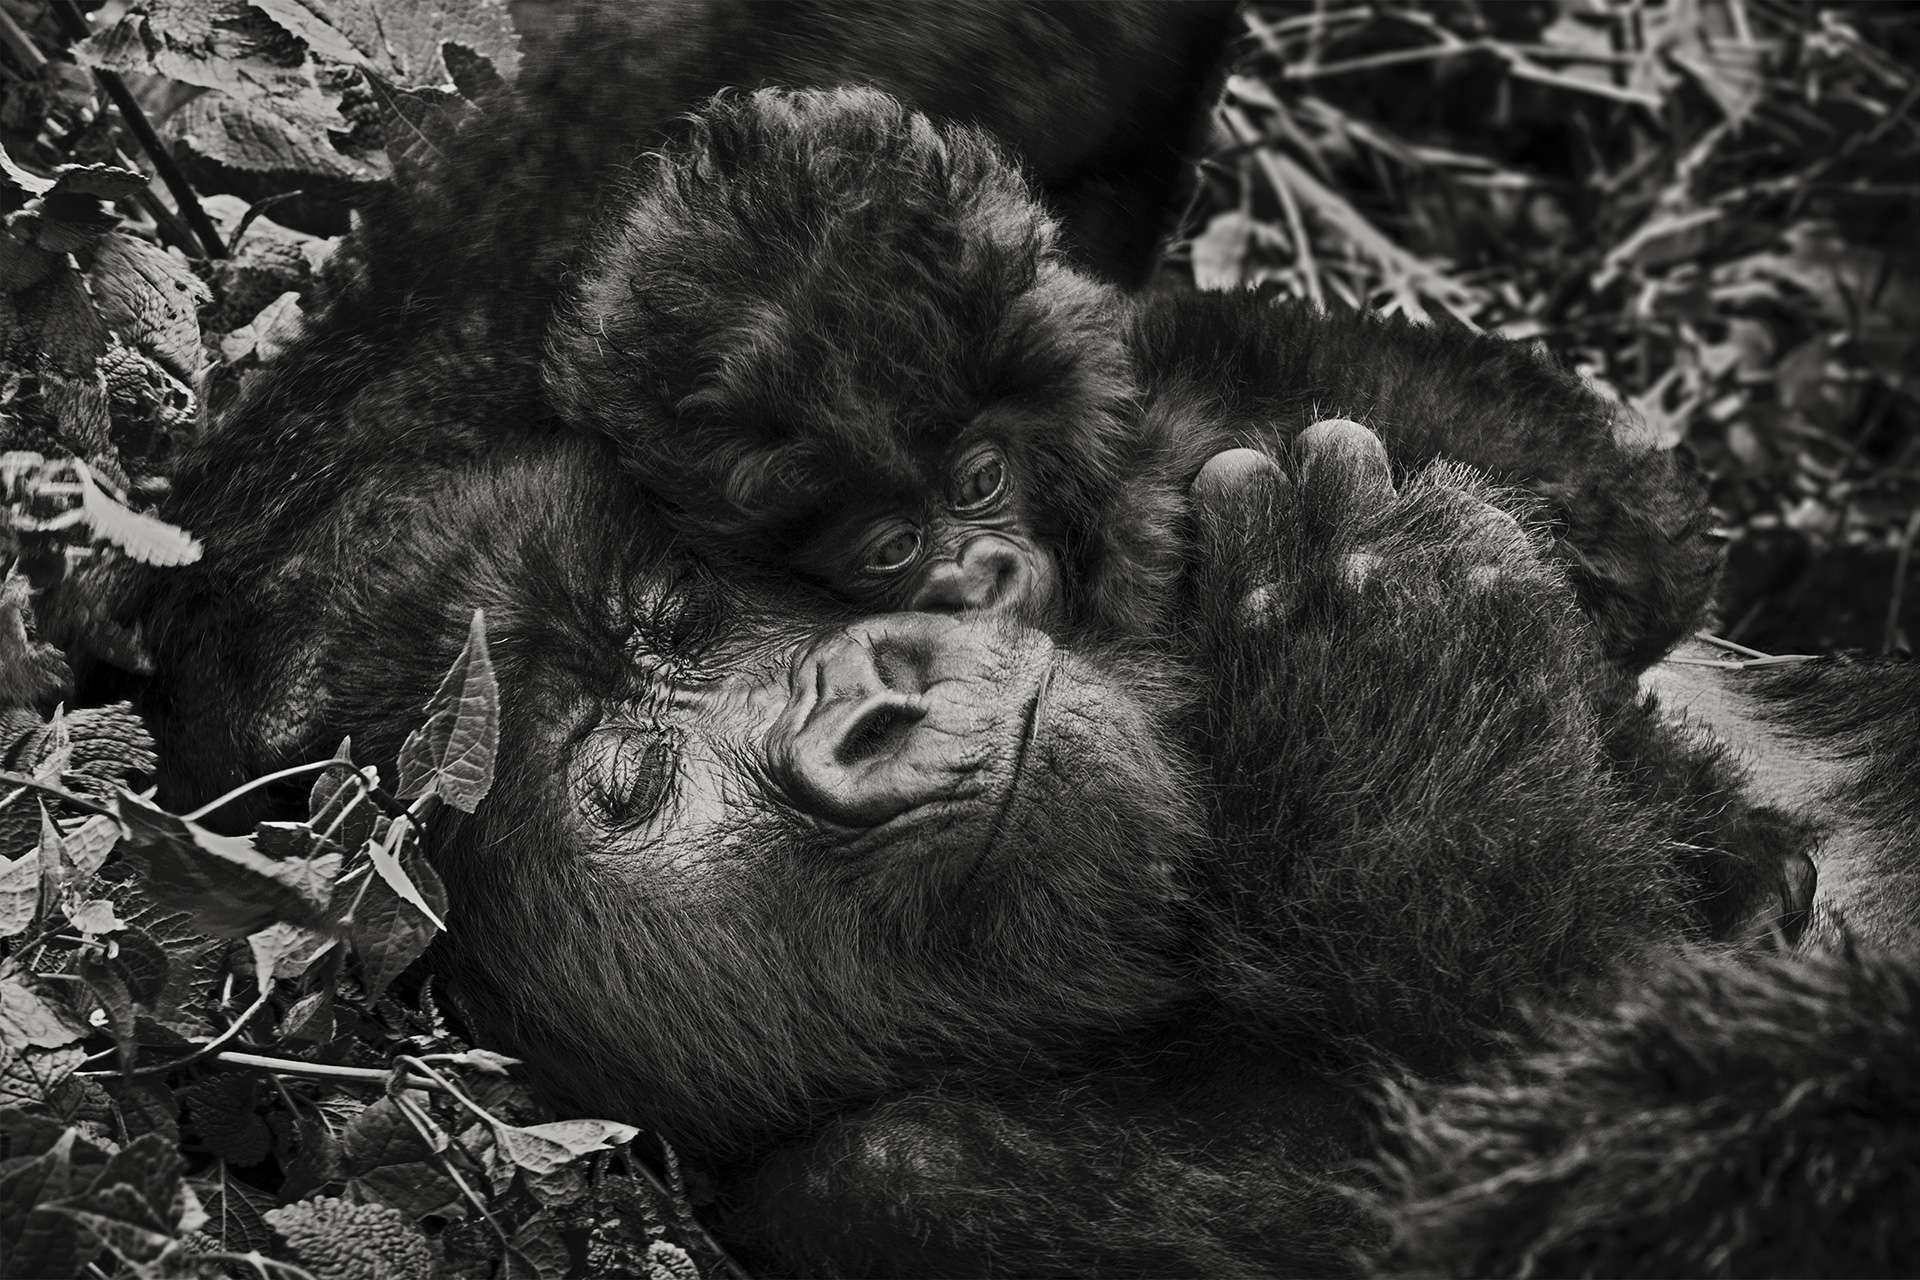 Photographie de Gilles Martin d'un gorille de montagne du Congo-RDC